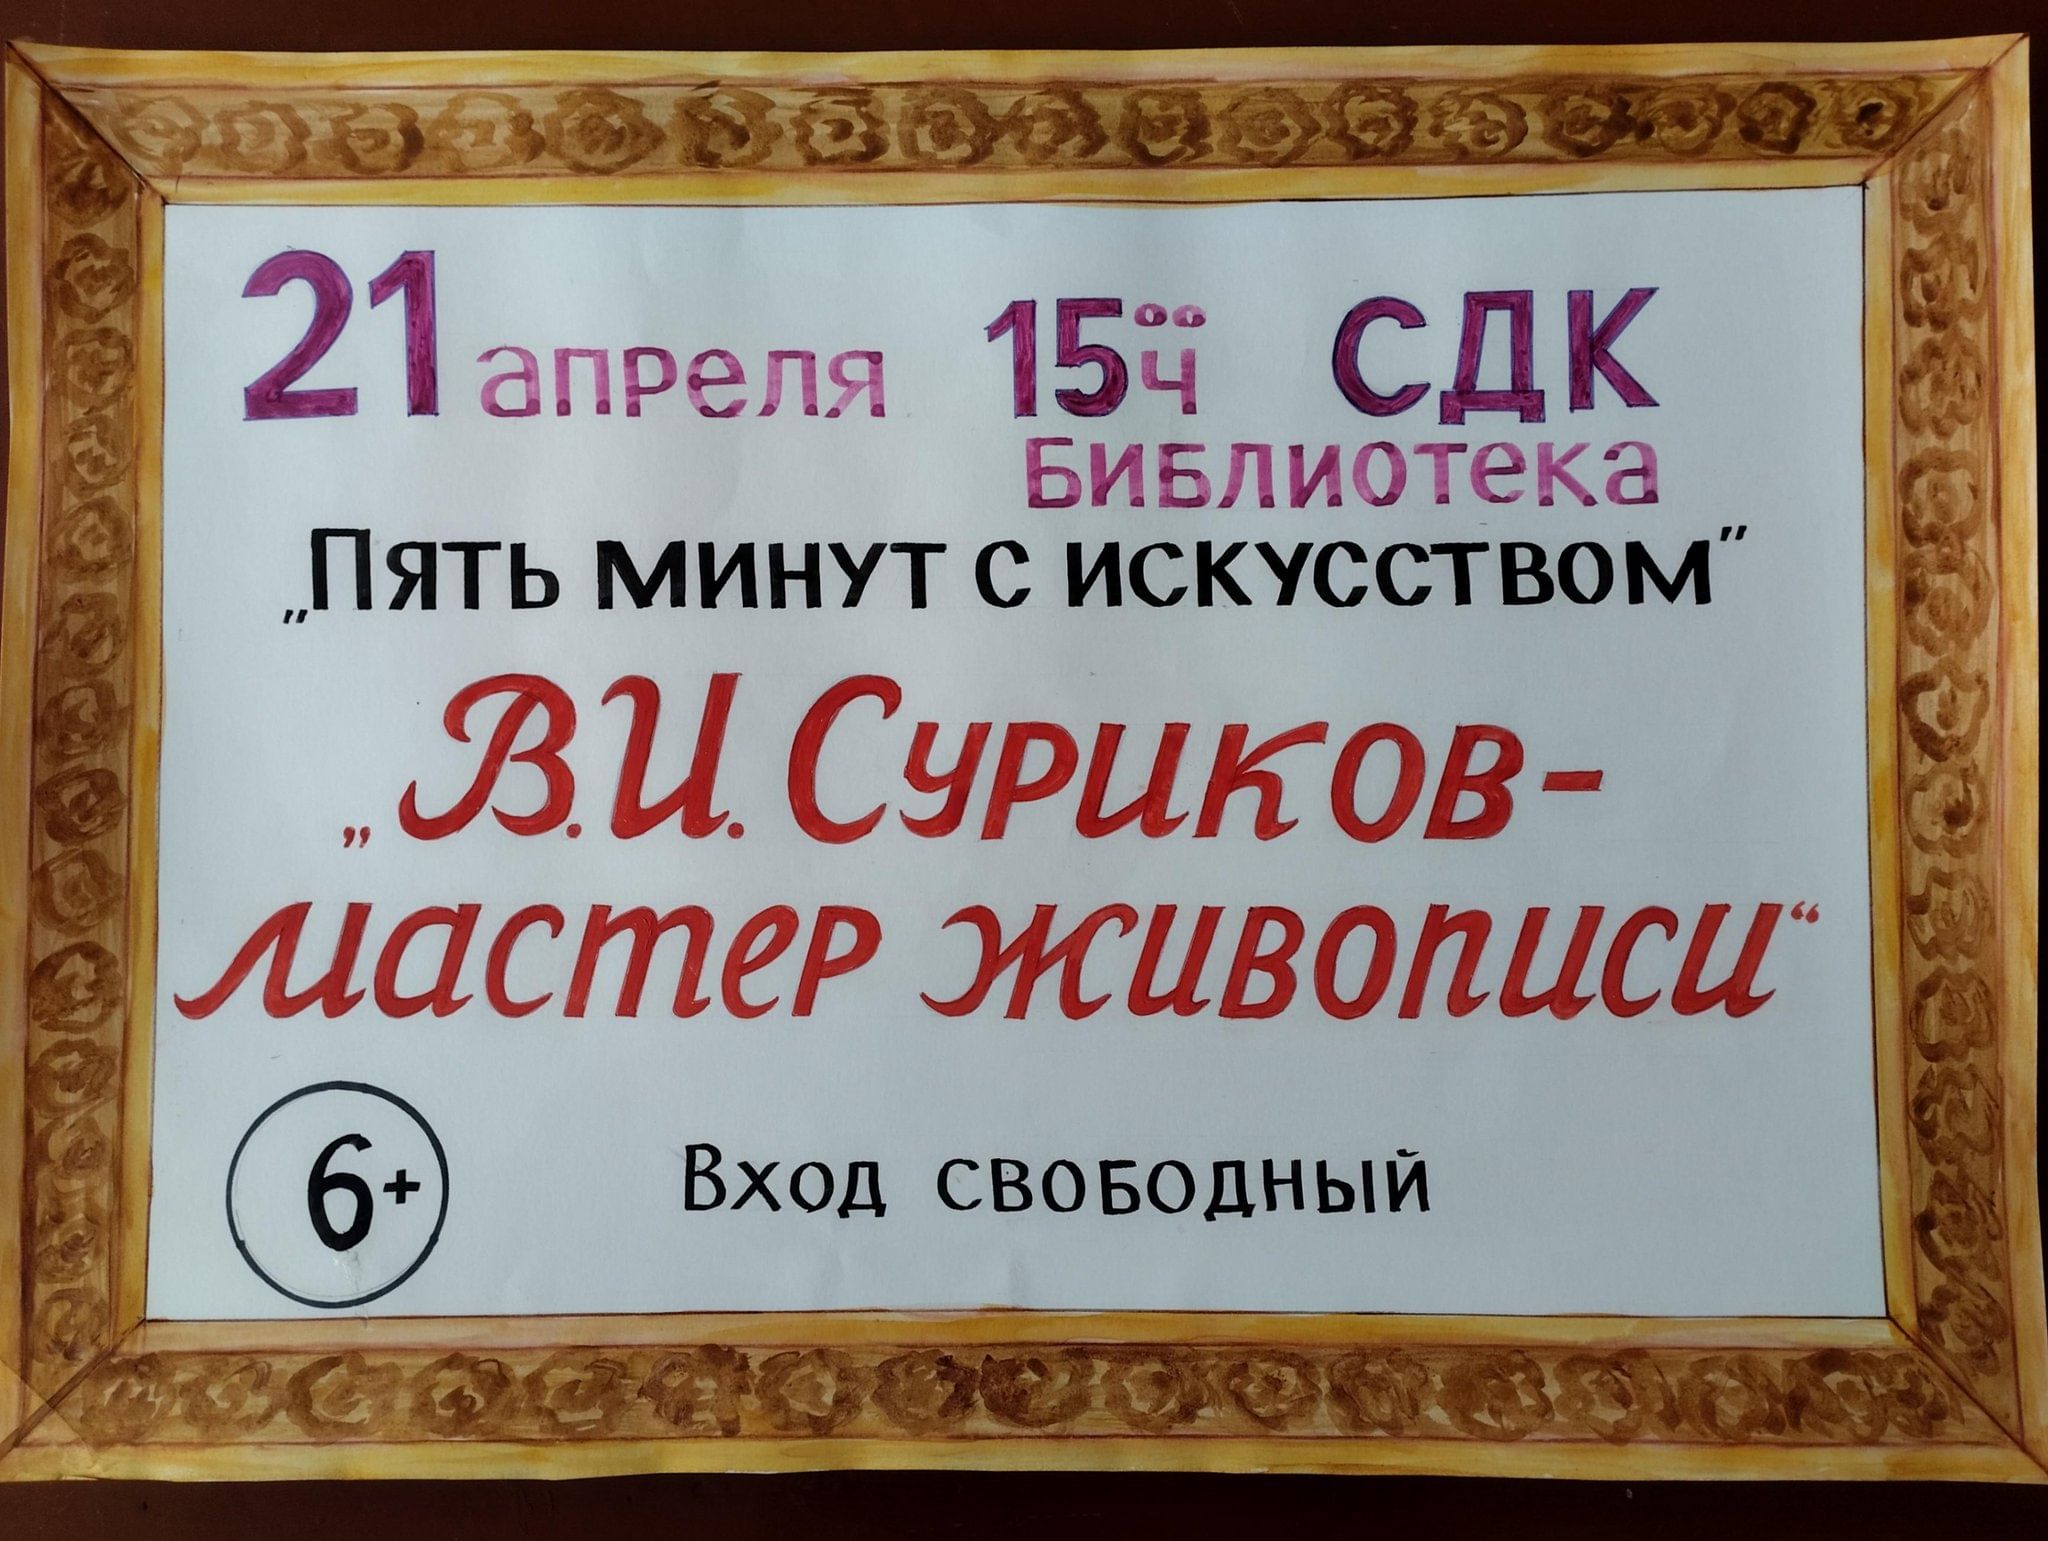 Русский музей суриков купить билеты пенсионерам